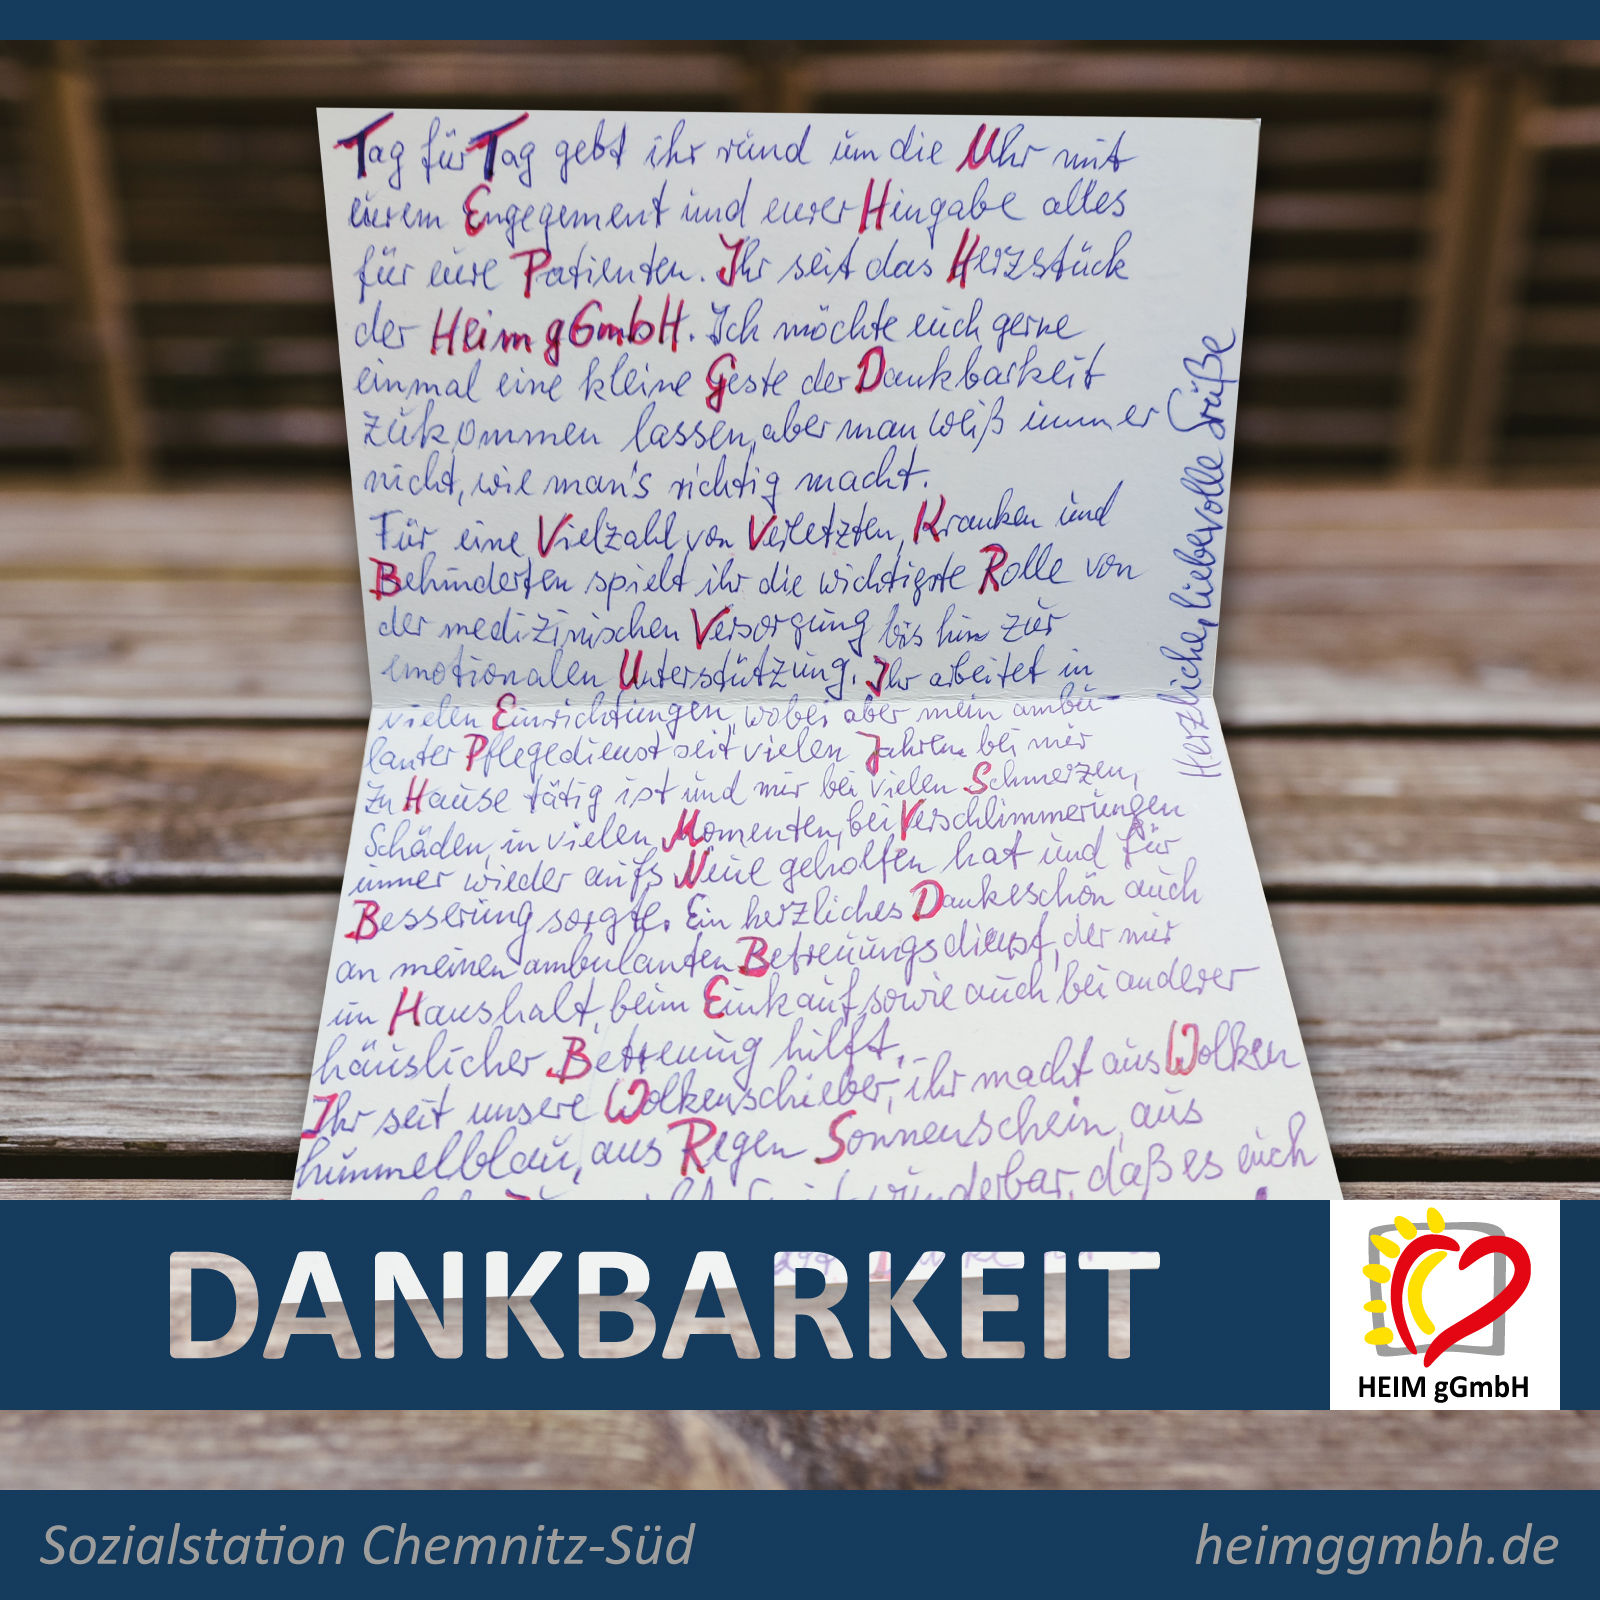 Die Sozialstation Chemnitz-Süd der HEIM gemeinnützigen GmbH erhielt dieses warmherzigen Brief zum Tag der Pflege.